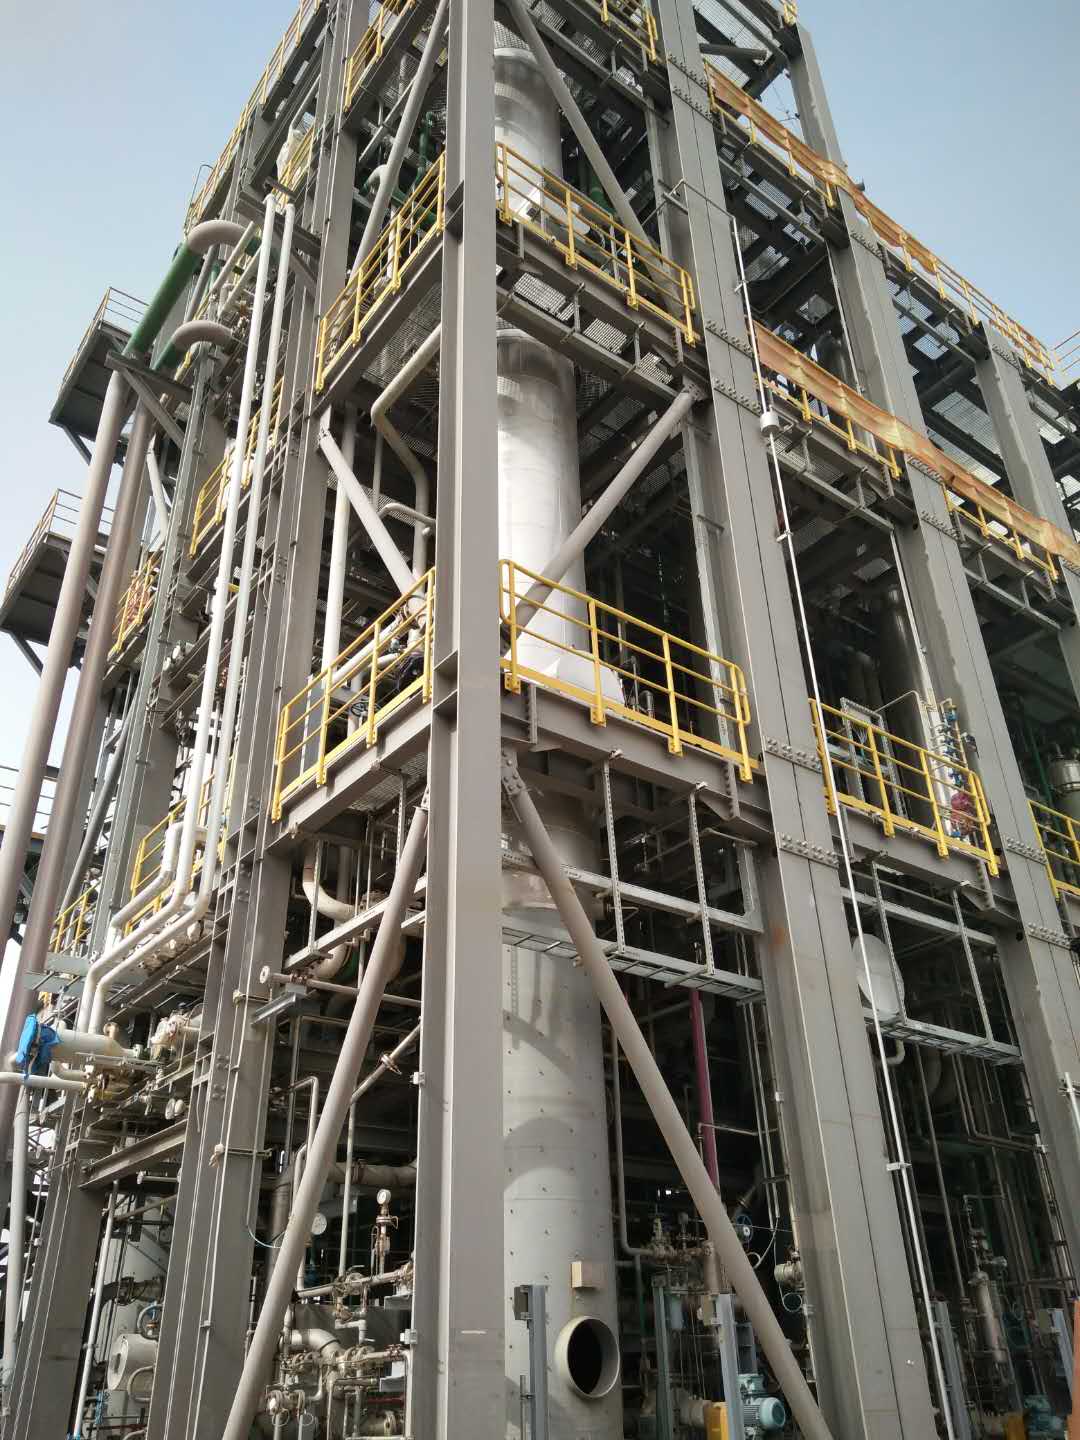 鄯善县美汇特高级沥青化工有限公司钢结构防火涂料工程建筑面积68000平米